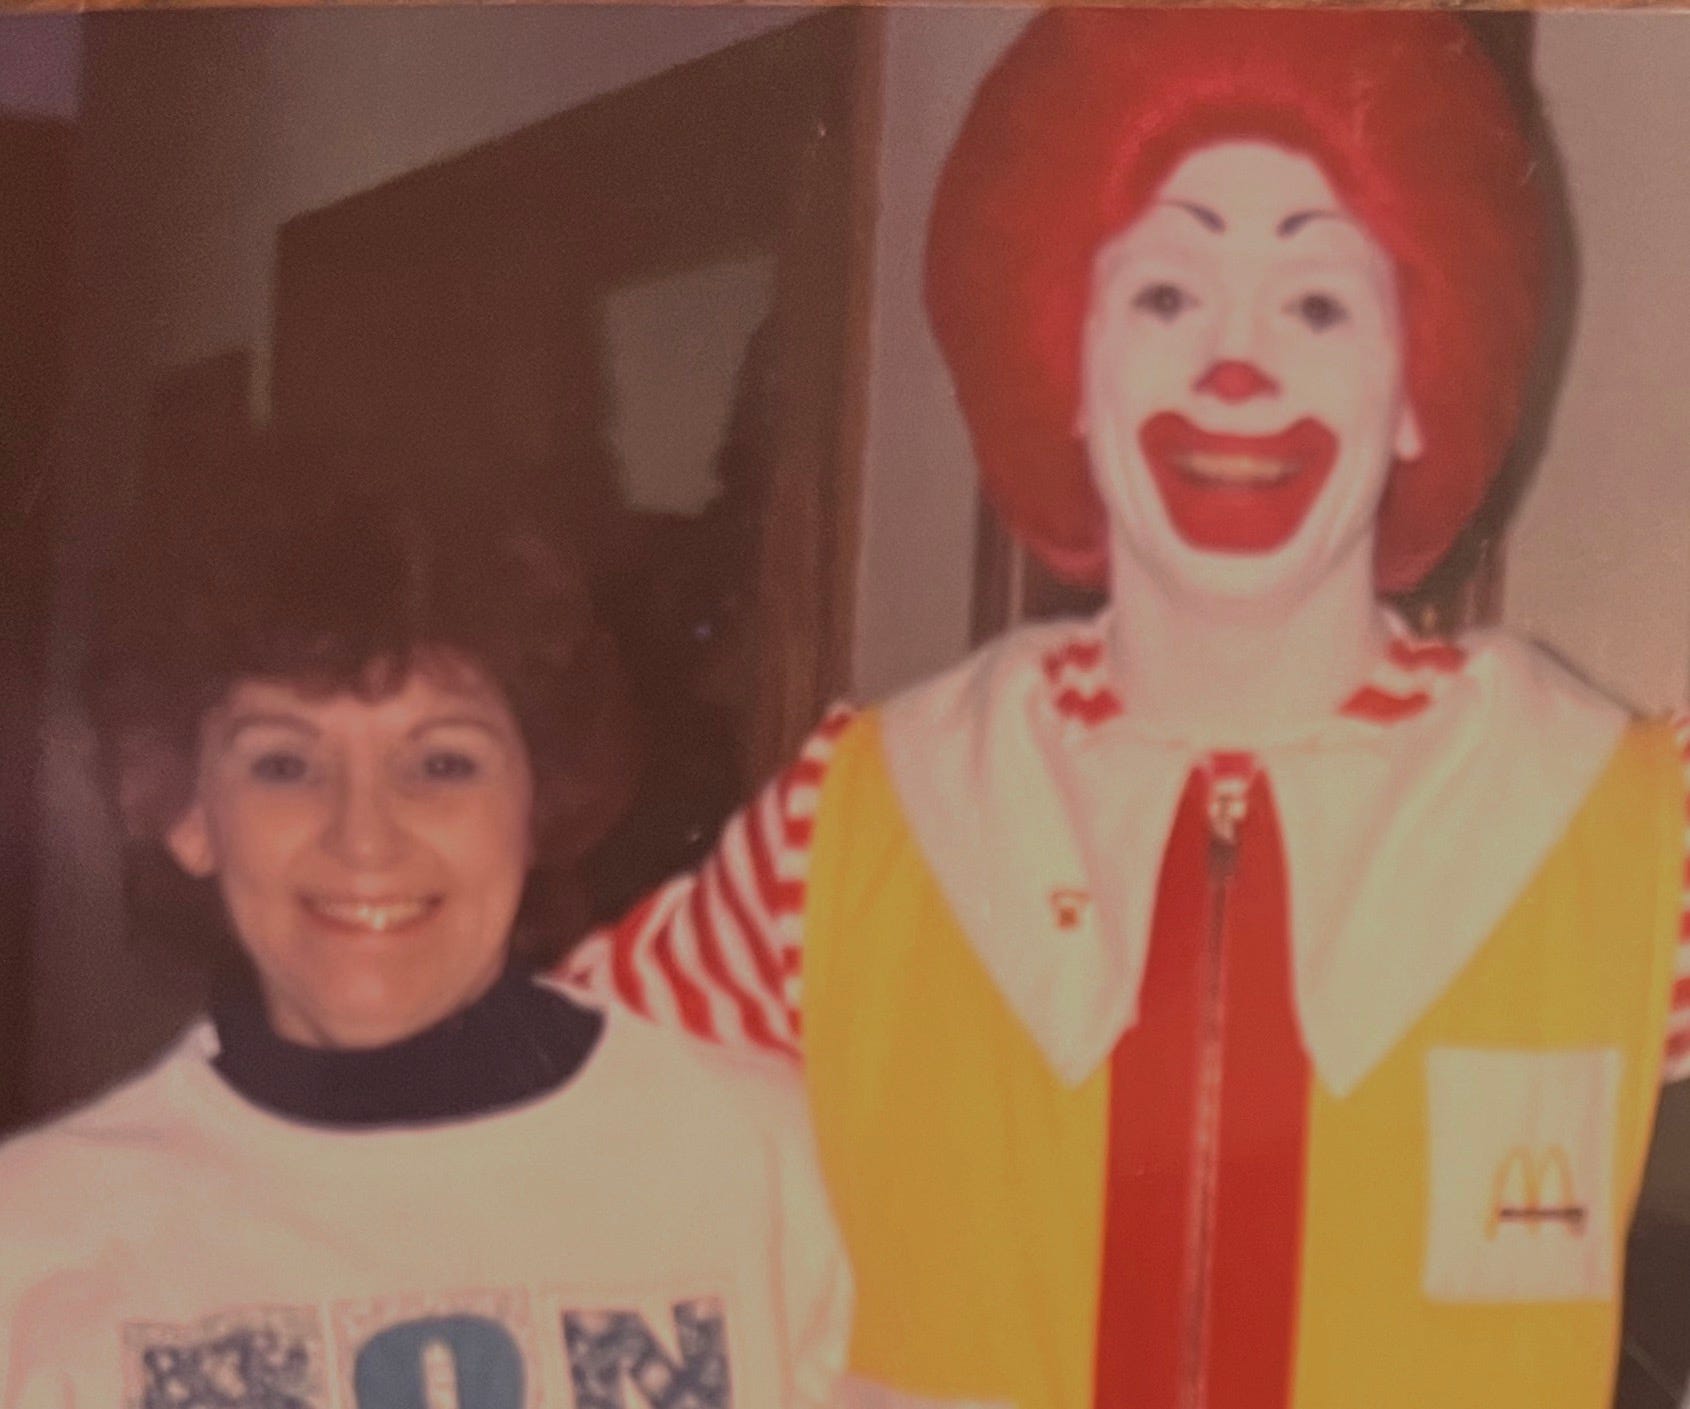 Ein altes Foto, das Dot Sharp, einen McDonald's-Mitarbeiter, und einen als Ronald McDonald verkleideten Mann zeigt